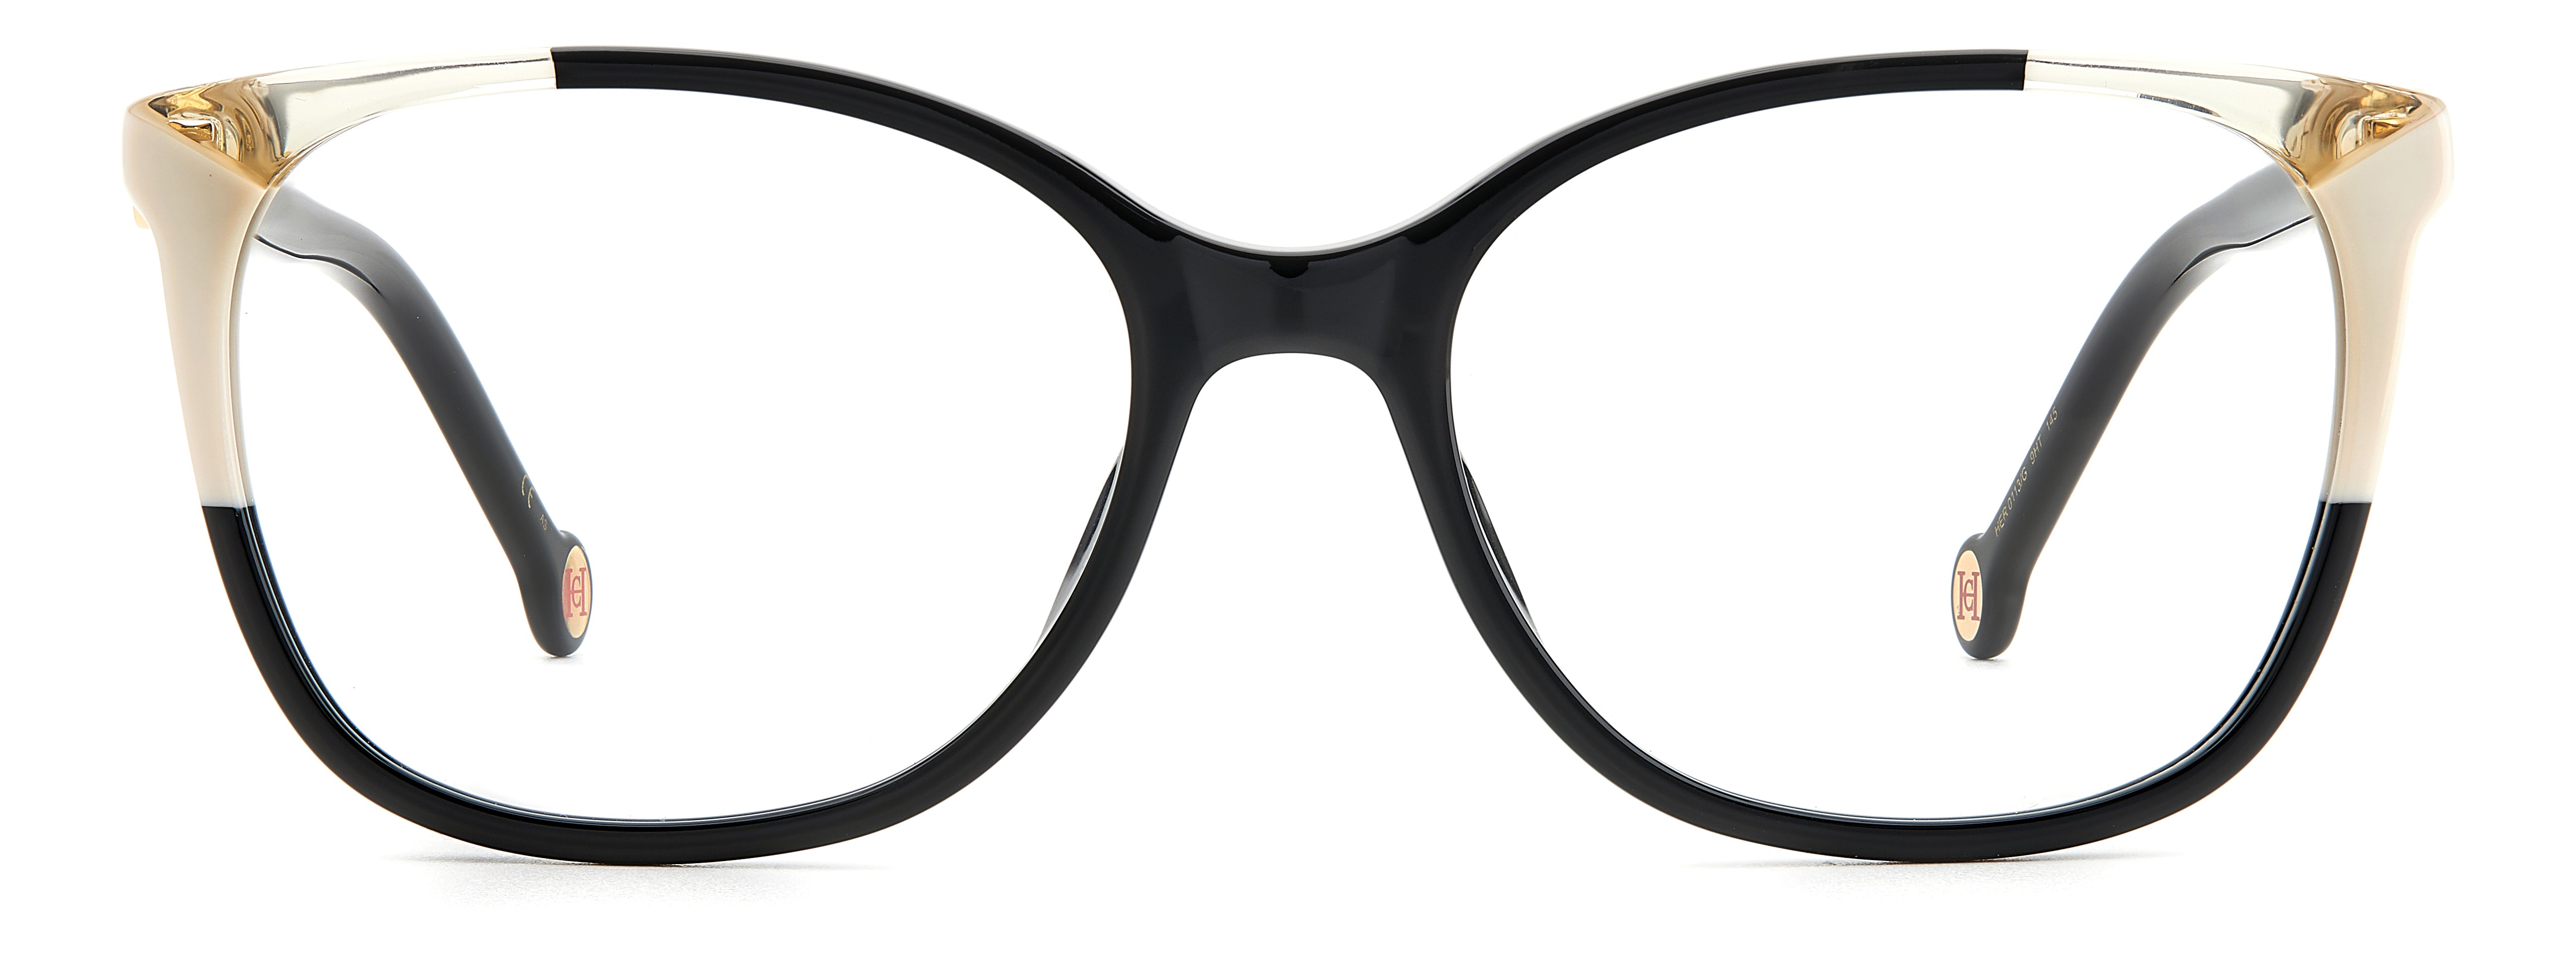 Sunglasses,specsmart, spec smart, glasses, eye glasses glasses frames, where to get glasses in lagos, eye treatment, wellness health care group, caeolina herrera HER 0113/G